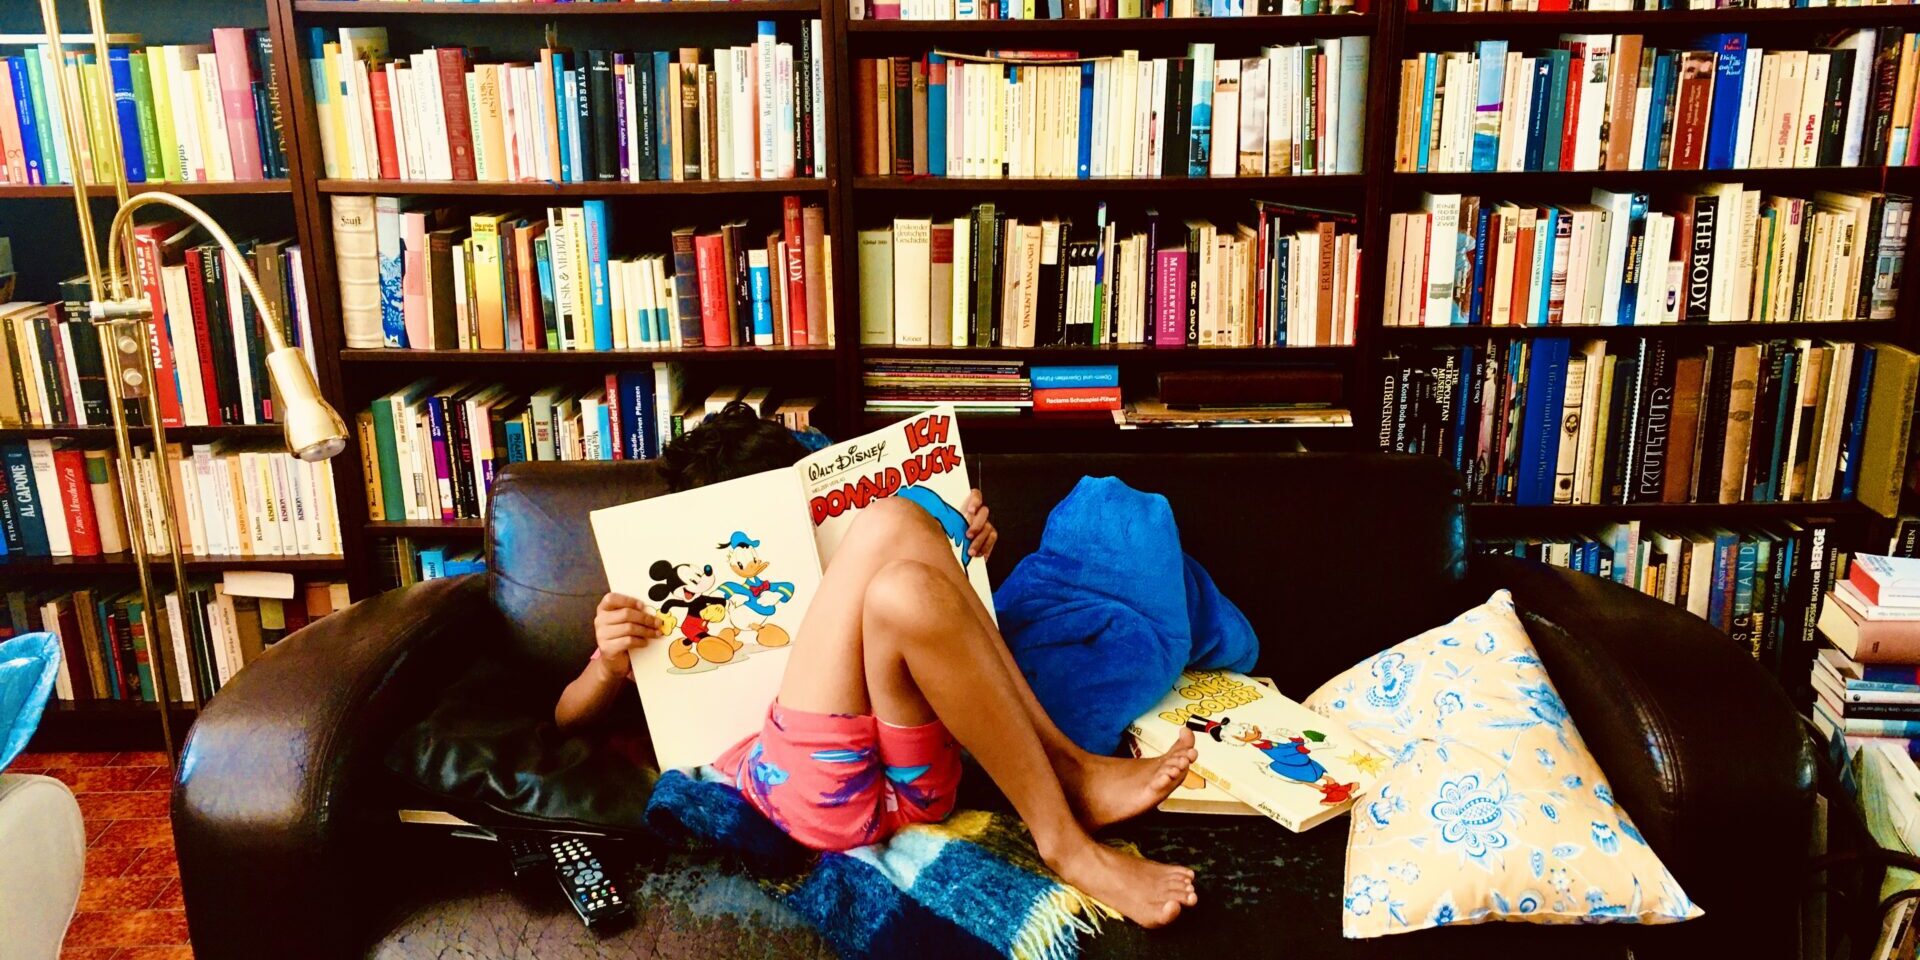 Ein Kind sitzt auf einem Sofa und liest ein Comicheft. Hinter dem Sofa steht ein Regal mit Büchern, das die gesamte Wand ausfüllt.